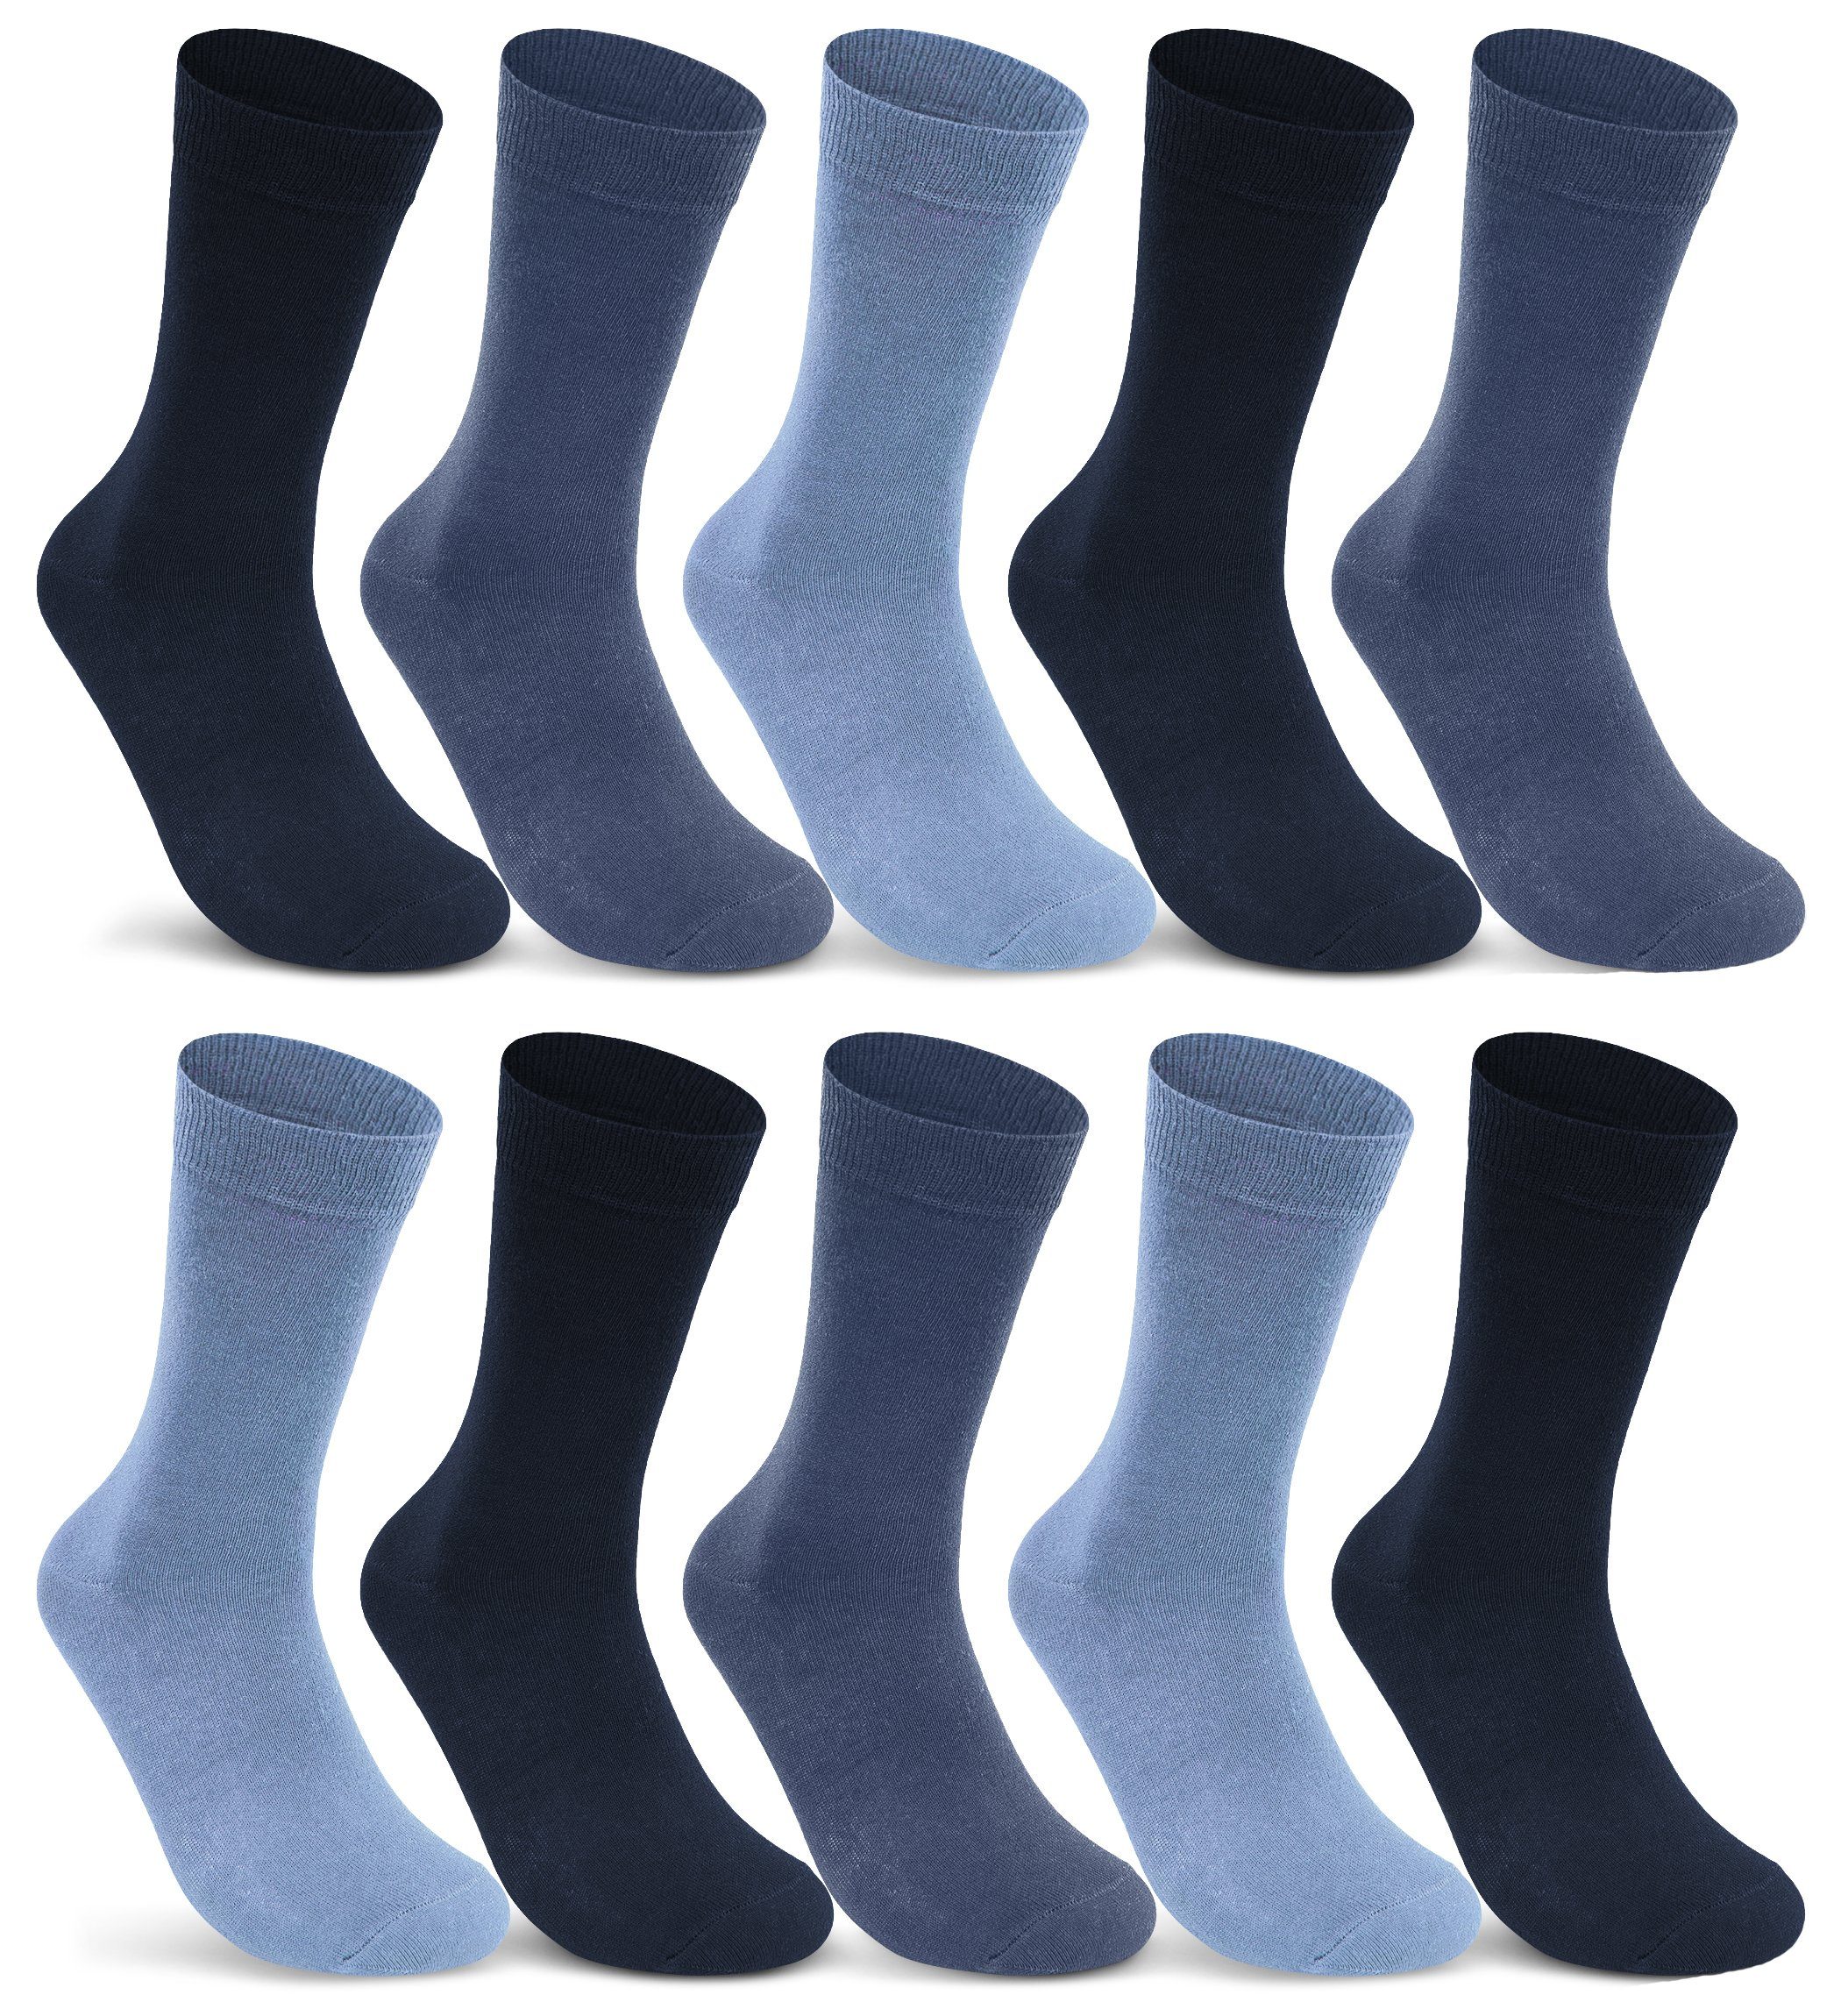 sockenkauf24 Socken 10 I 20 I 30 Paar Damen & Herren Business Socken Baumwolle (Jeans, Navy, Blau, 10-Paar, 43-46) mit Komfortbund Strümpfe - 10700